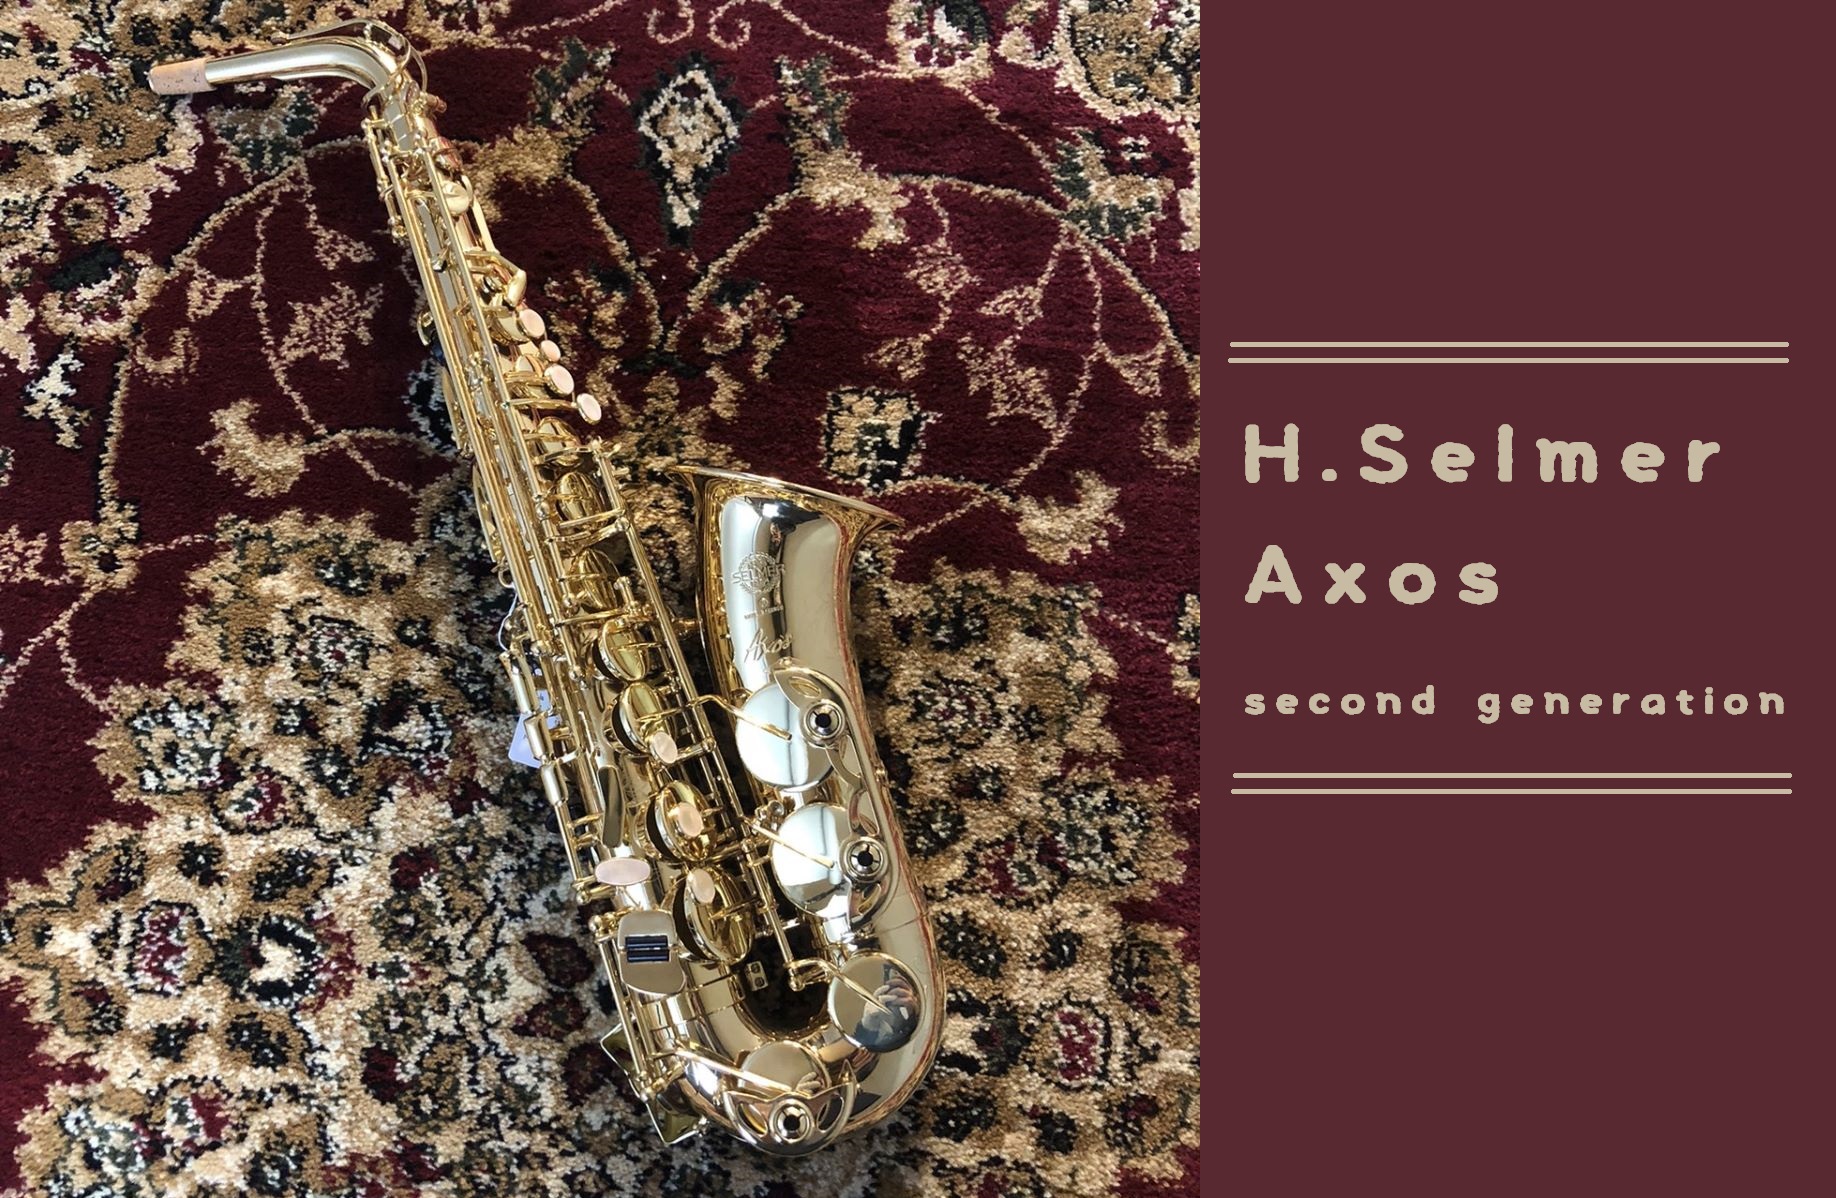 豊かな音、驚異のモデル！【H.Selmer】Axos second generation アルト